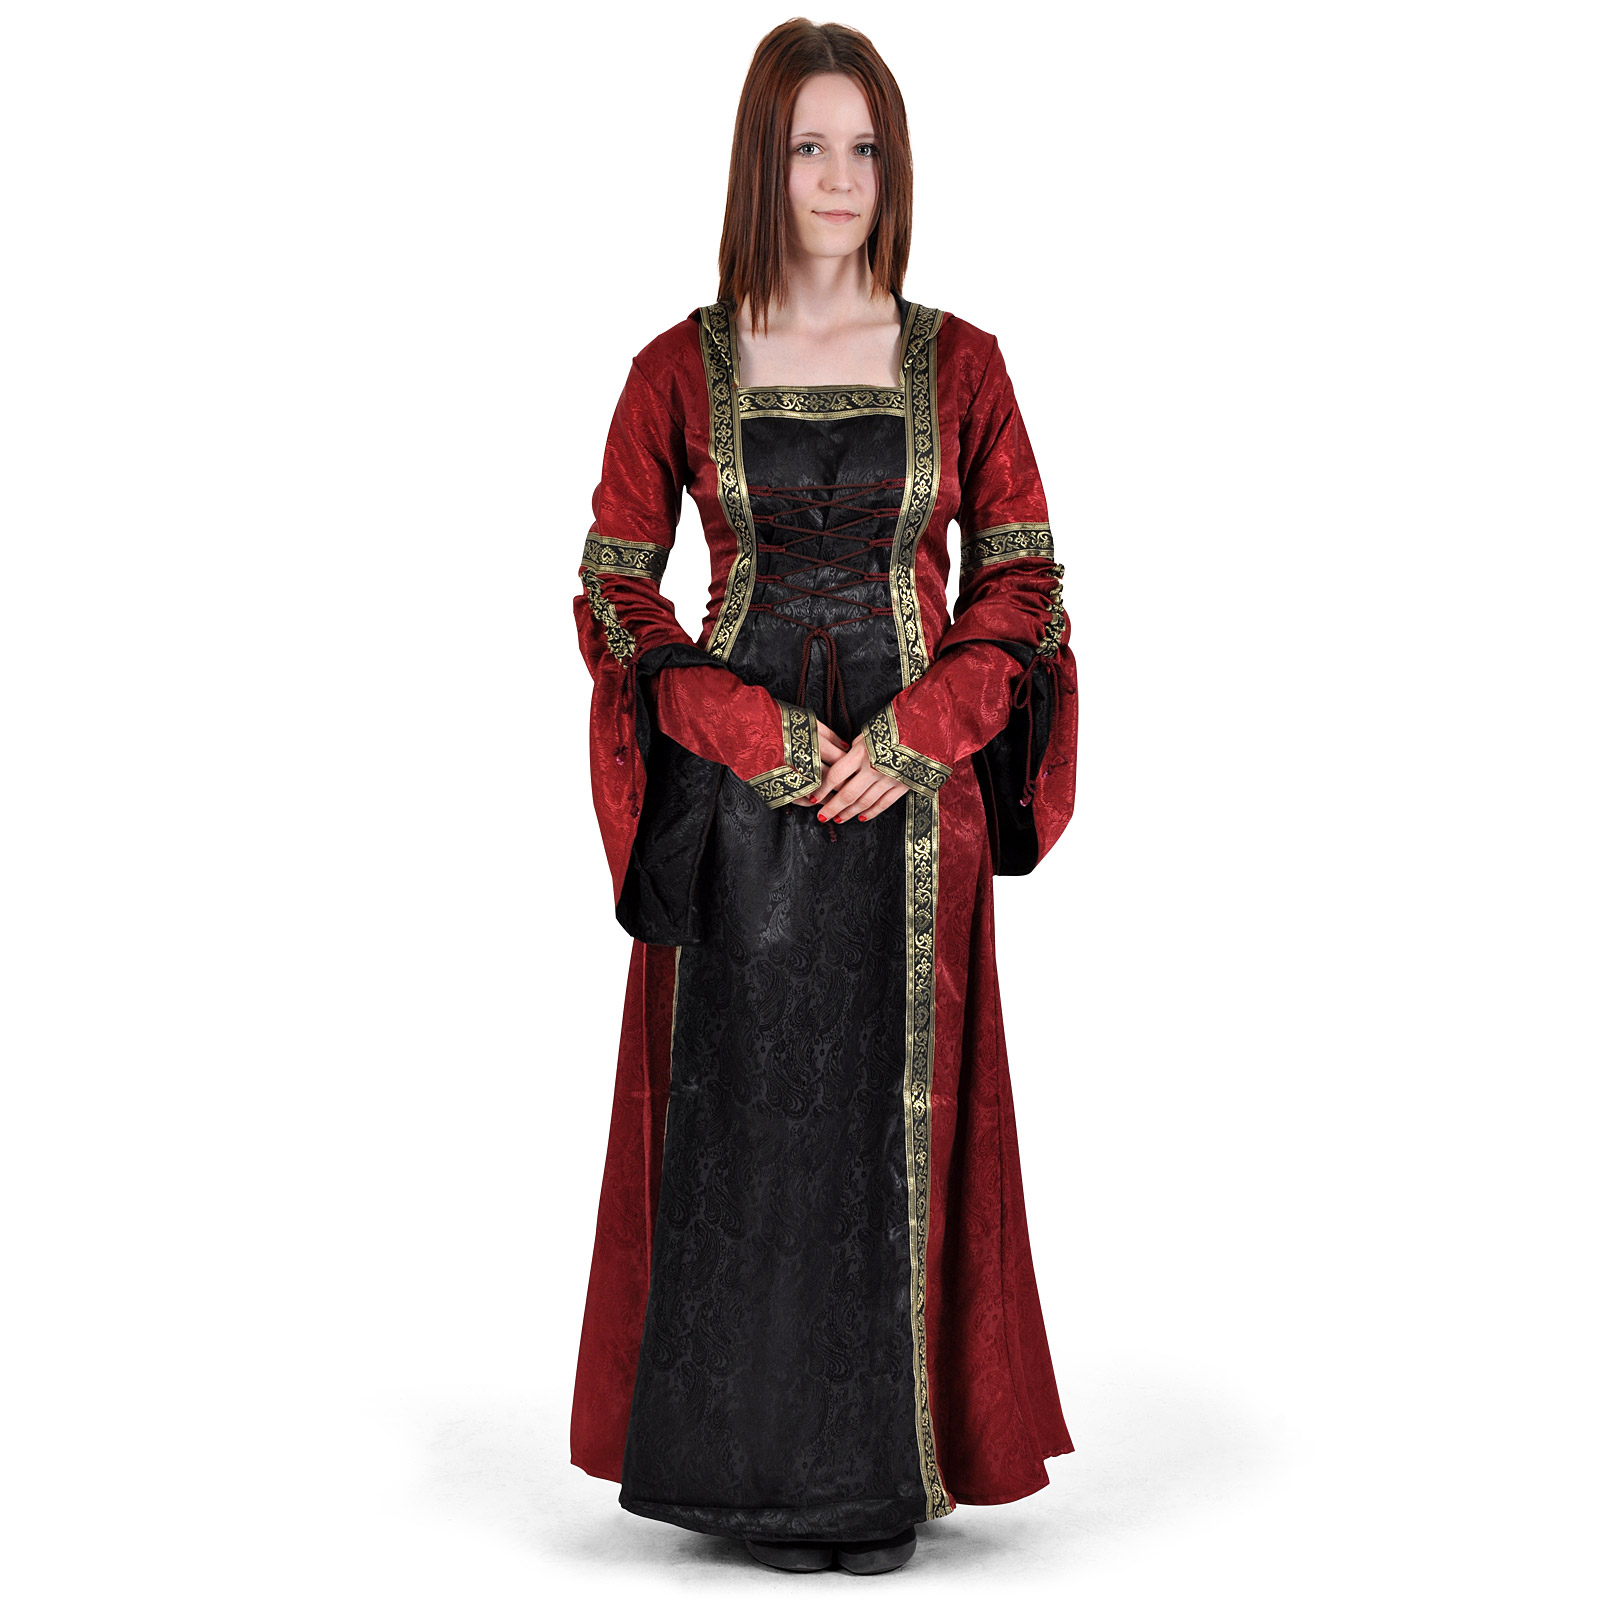 Medieval dress Iris bordeaux-black